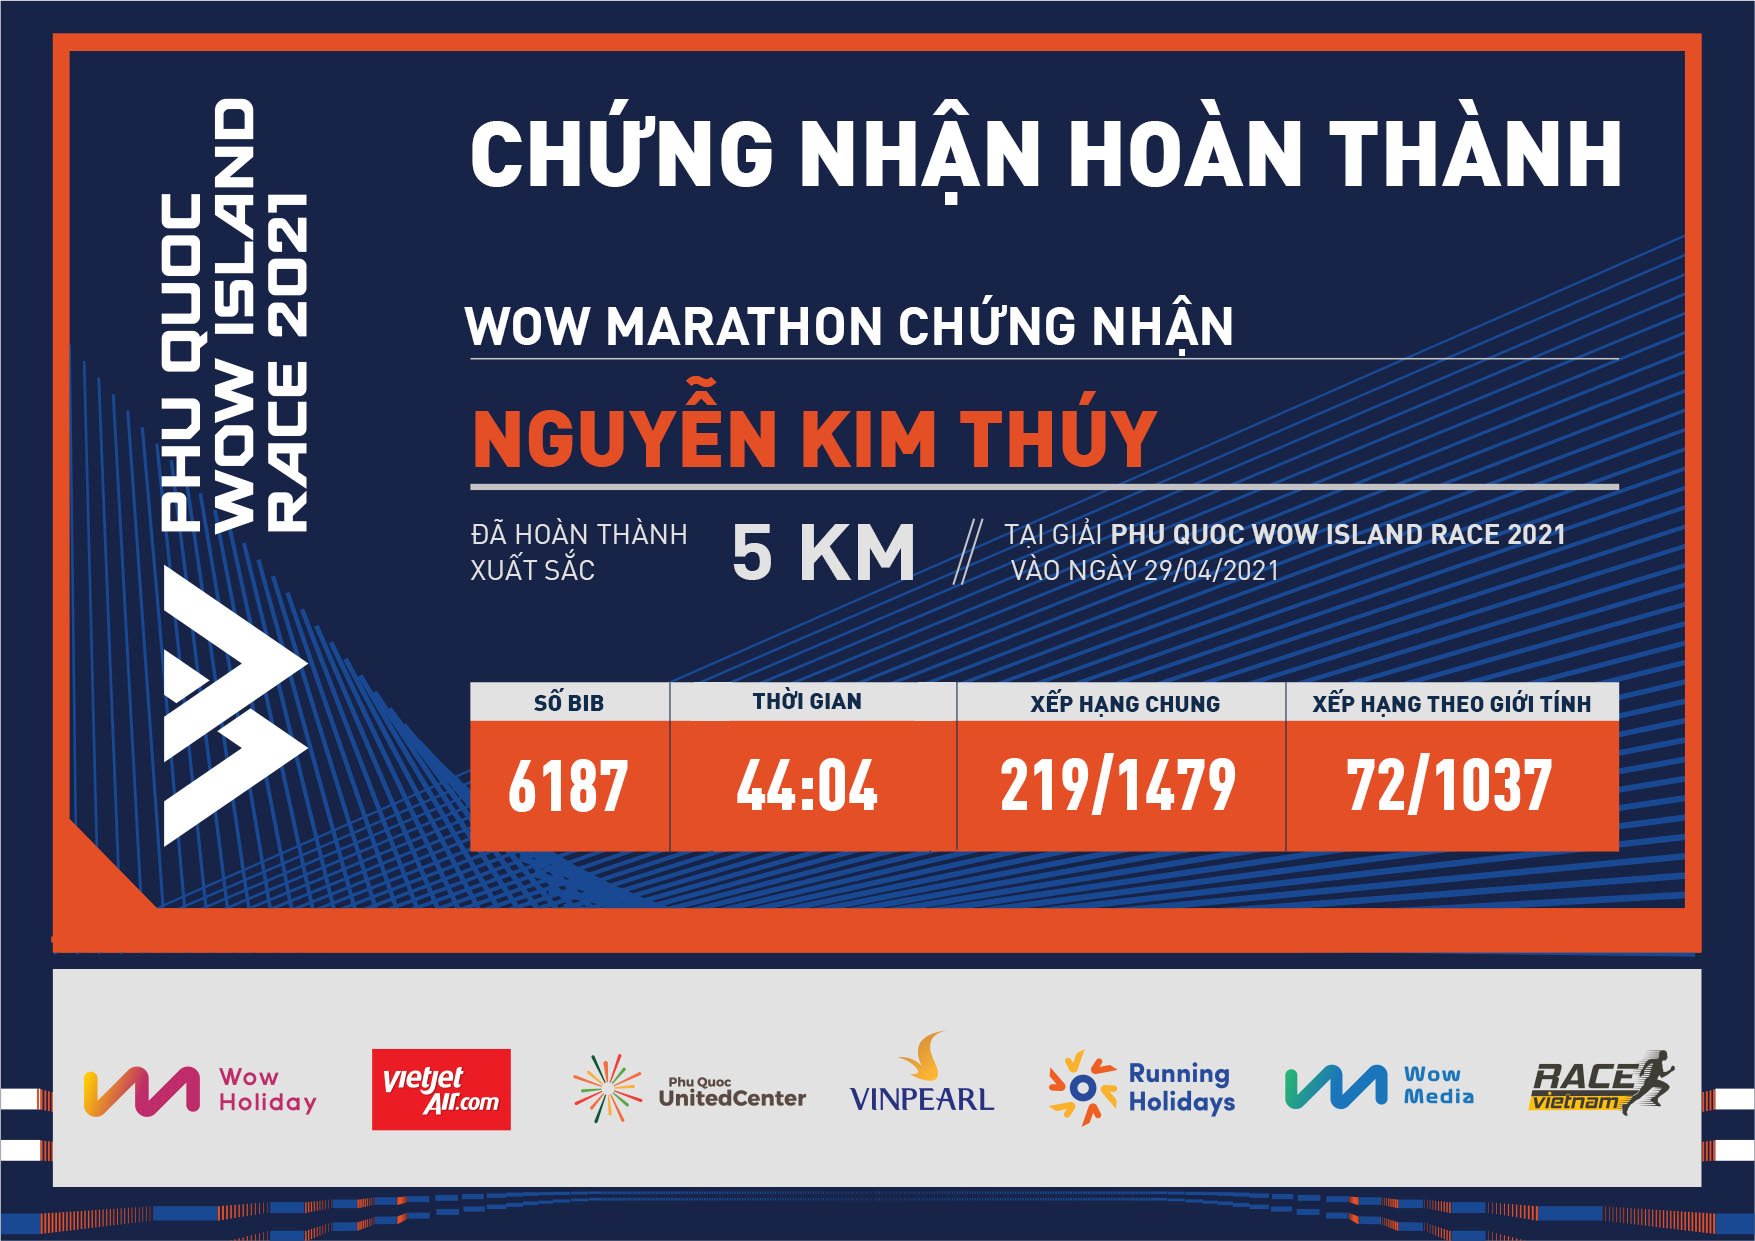 6187 - Nguyễn Kim Thúy